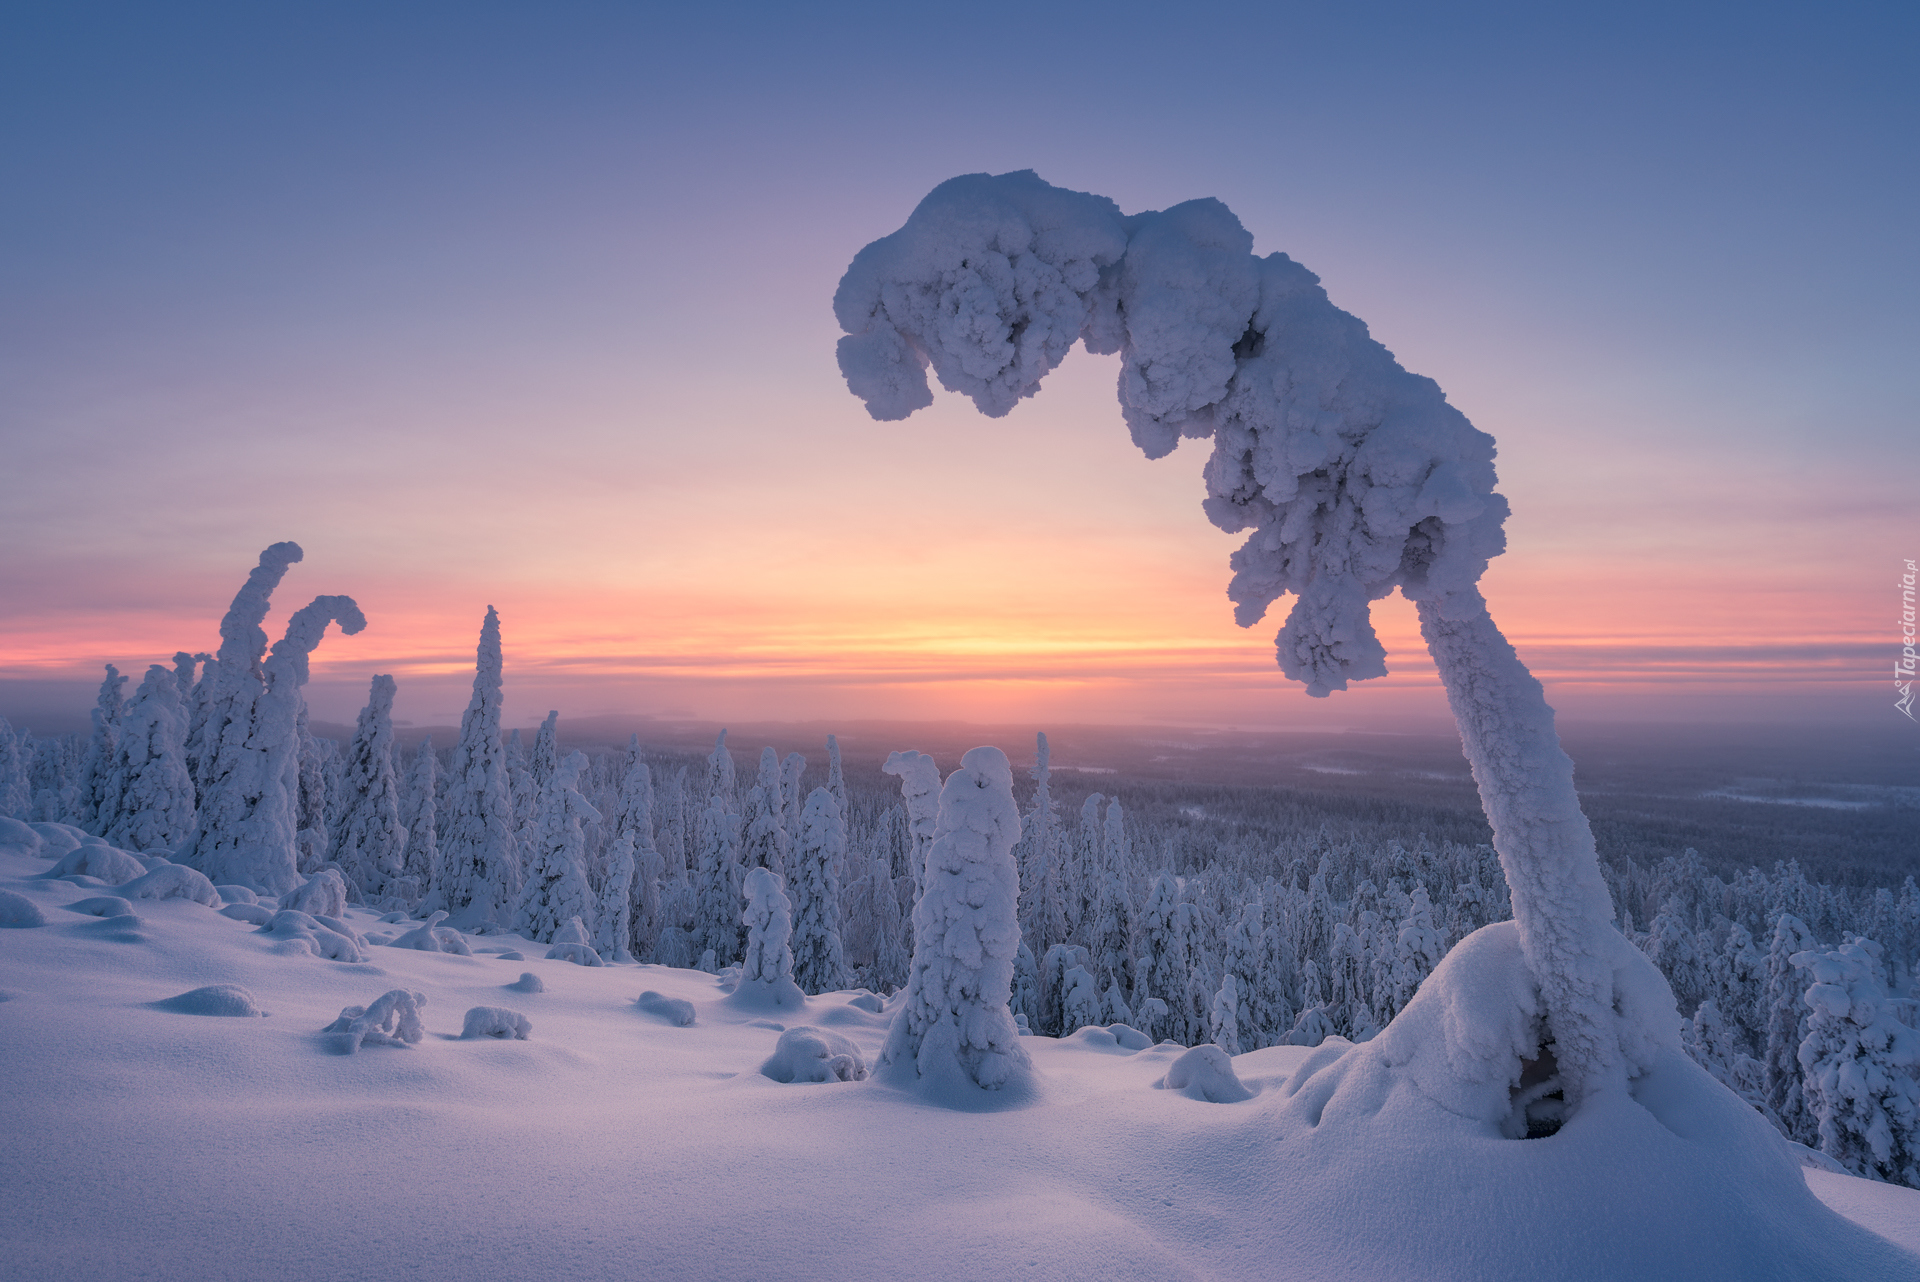 Park Narodowy Riisitunturi, Zima, Las, Ośnieżone, Drzewa, Wschód słońca, Gmina Posio, Laponia, Finlandia  Finlandia